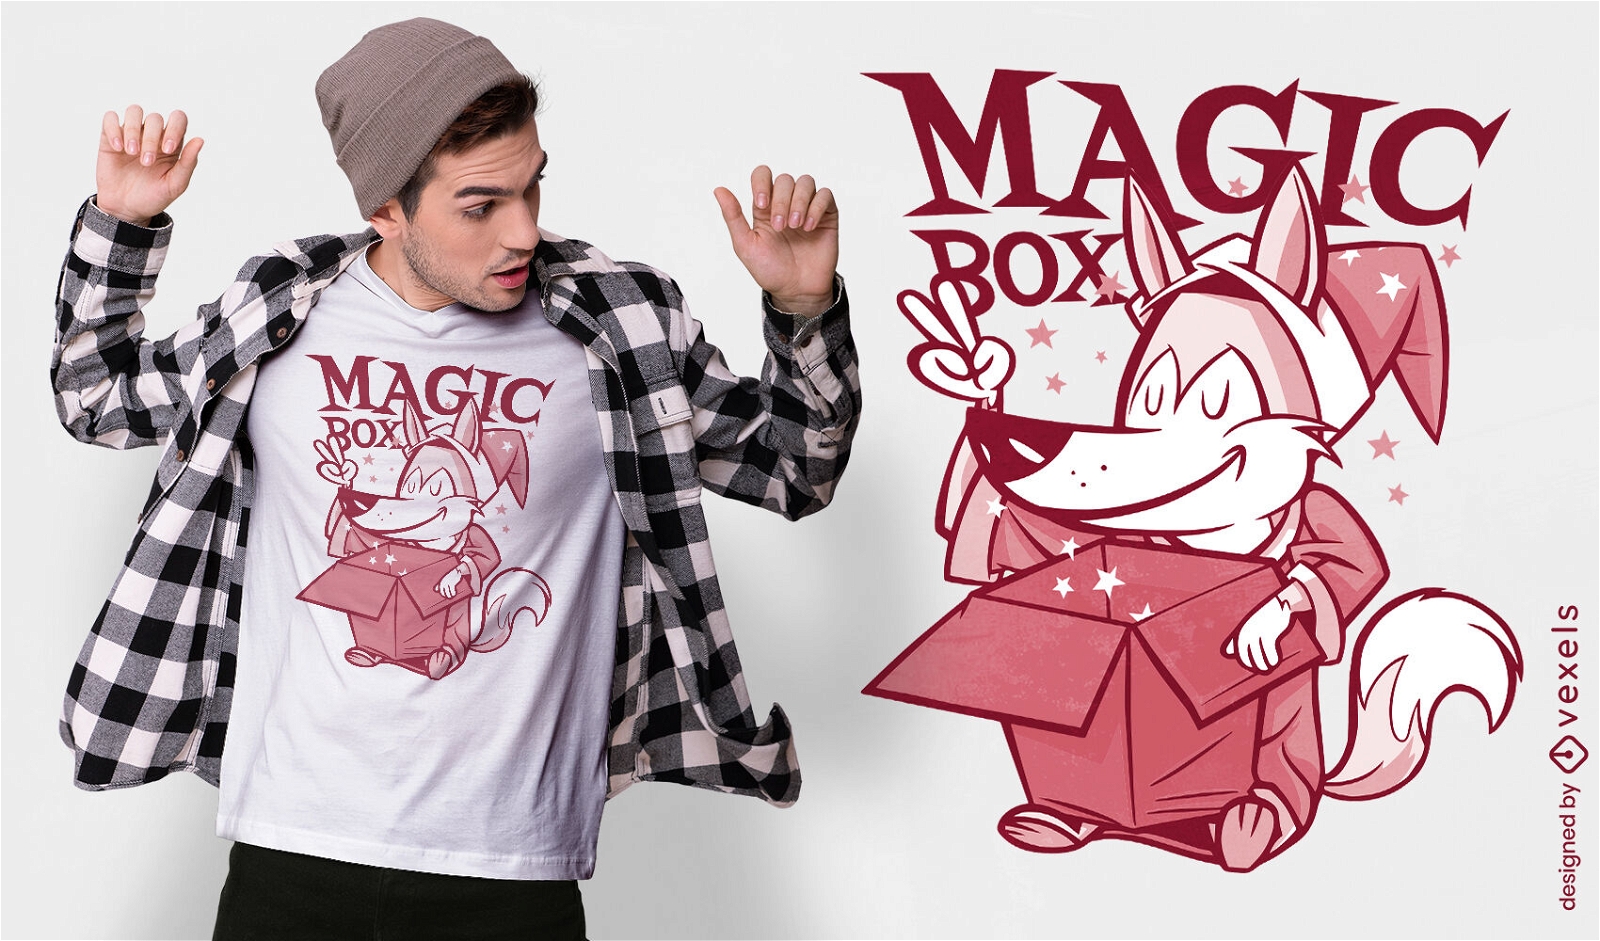 Magic Box Fox Retro Cartoon T-shirt Design Vector Download